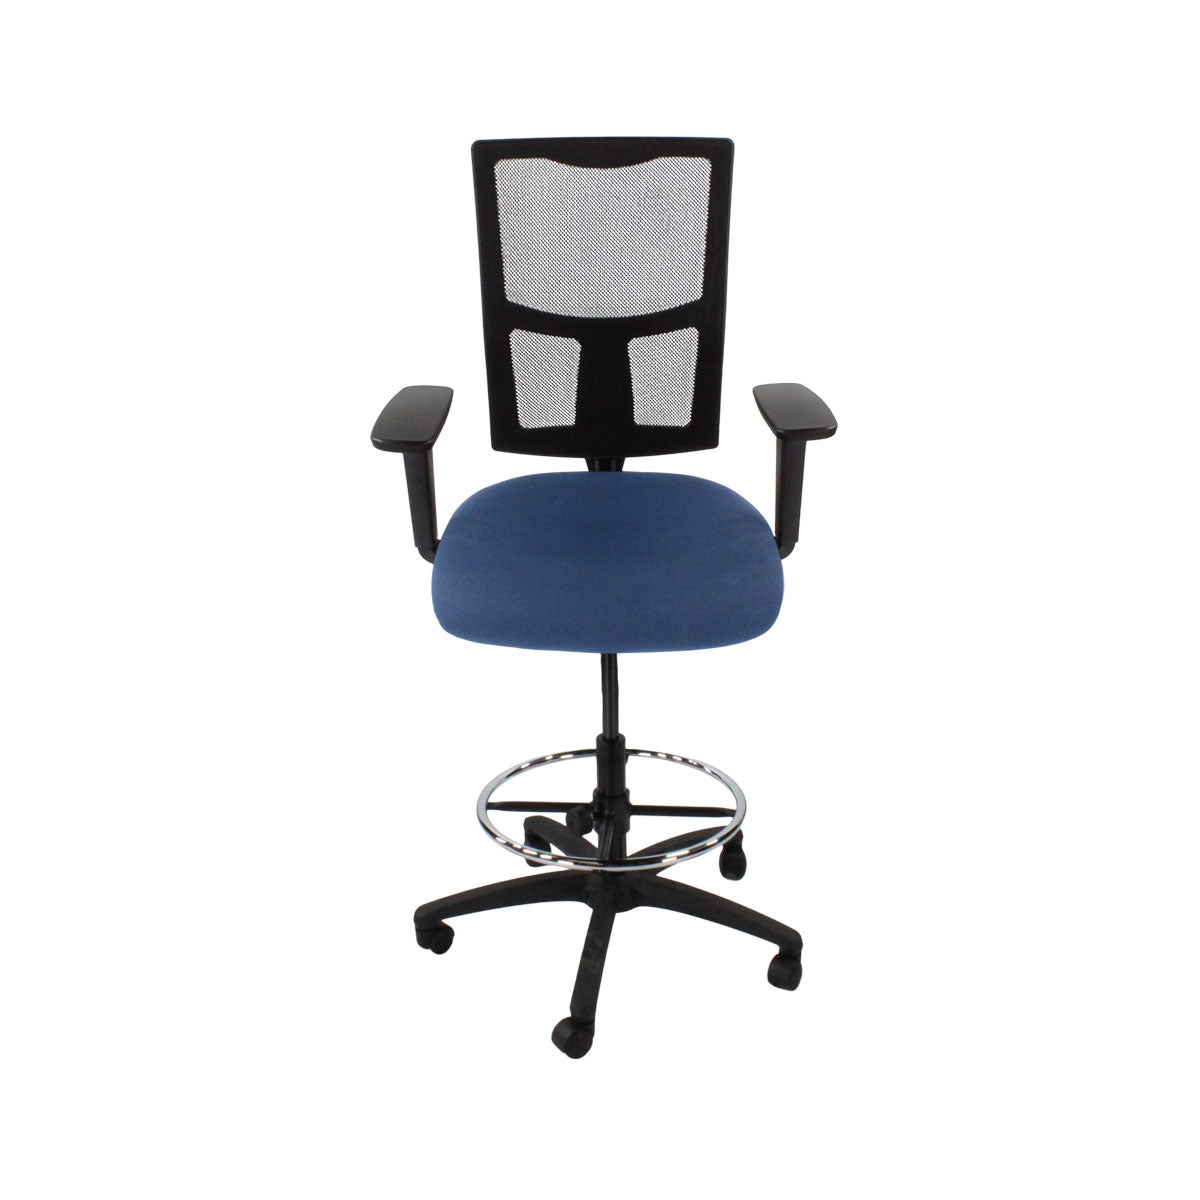 Inhaltsverzeichnis: Ergo 2 Draftsman Chair aus blauem Stoff – generalüberholt